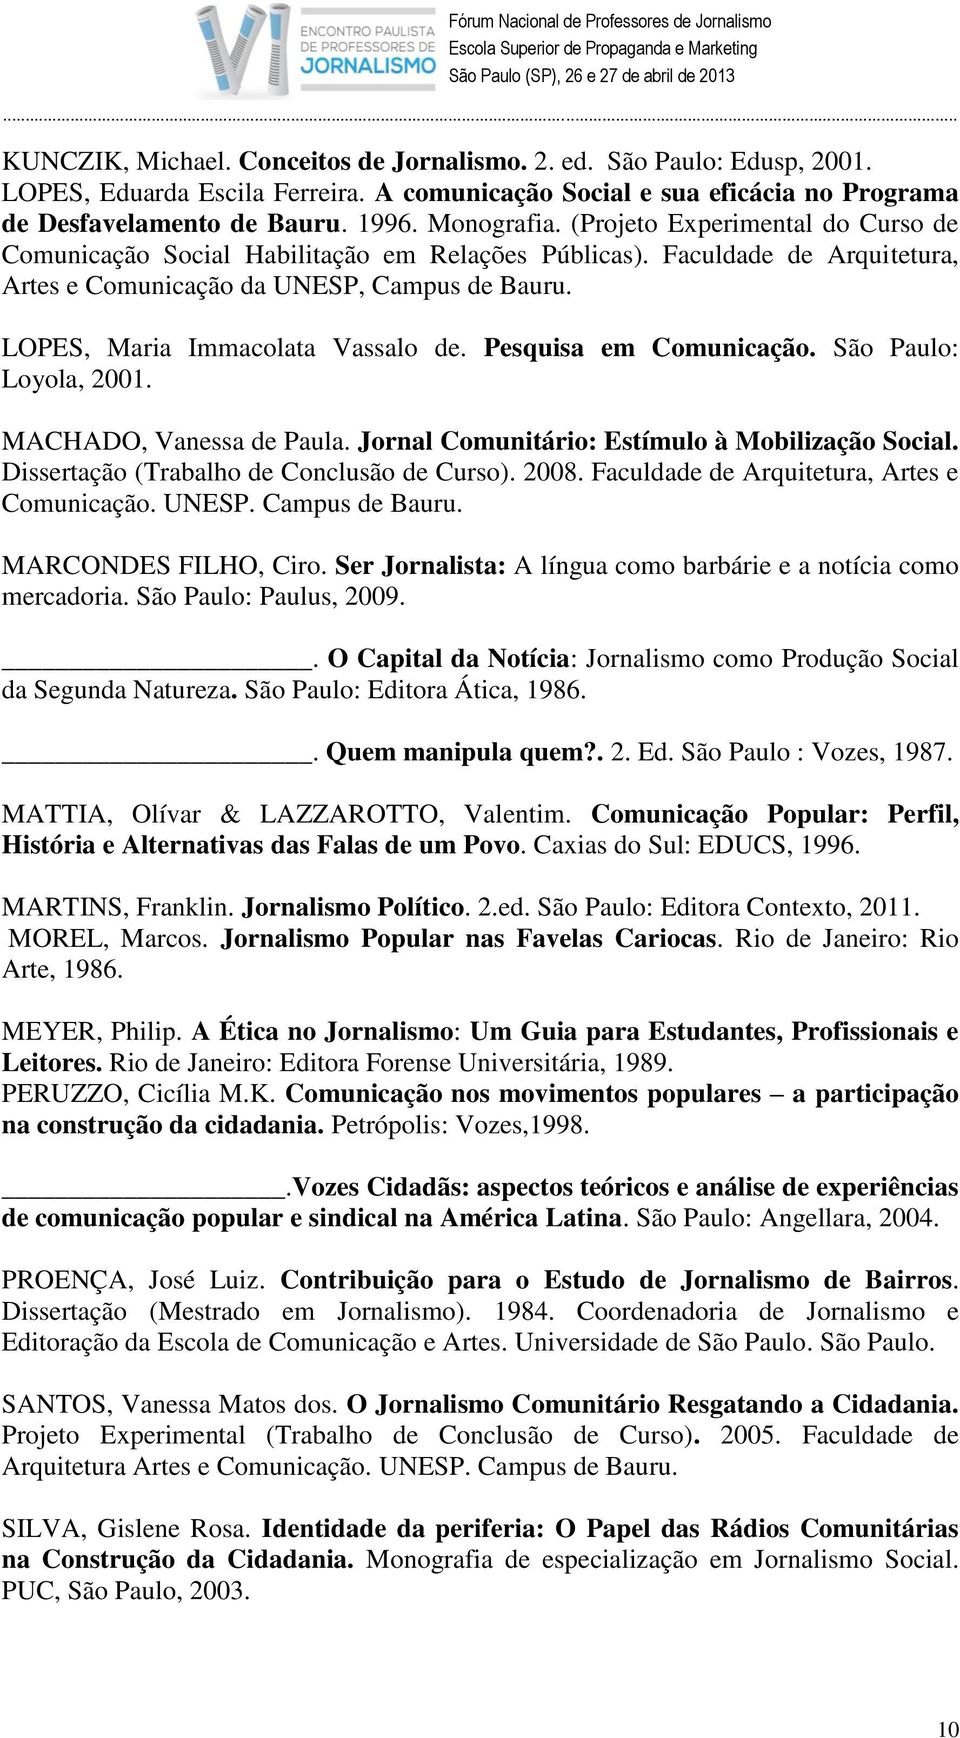 Pesquisa em Comunicação. São Paulo: Loyola, 2001. MACHADO, Vanessa de Paula. Jornal Comunitário: Estímulo à Mobilização Social. Dissertação (Trabalho de Conclusão de Curso). 2008.